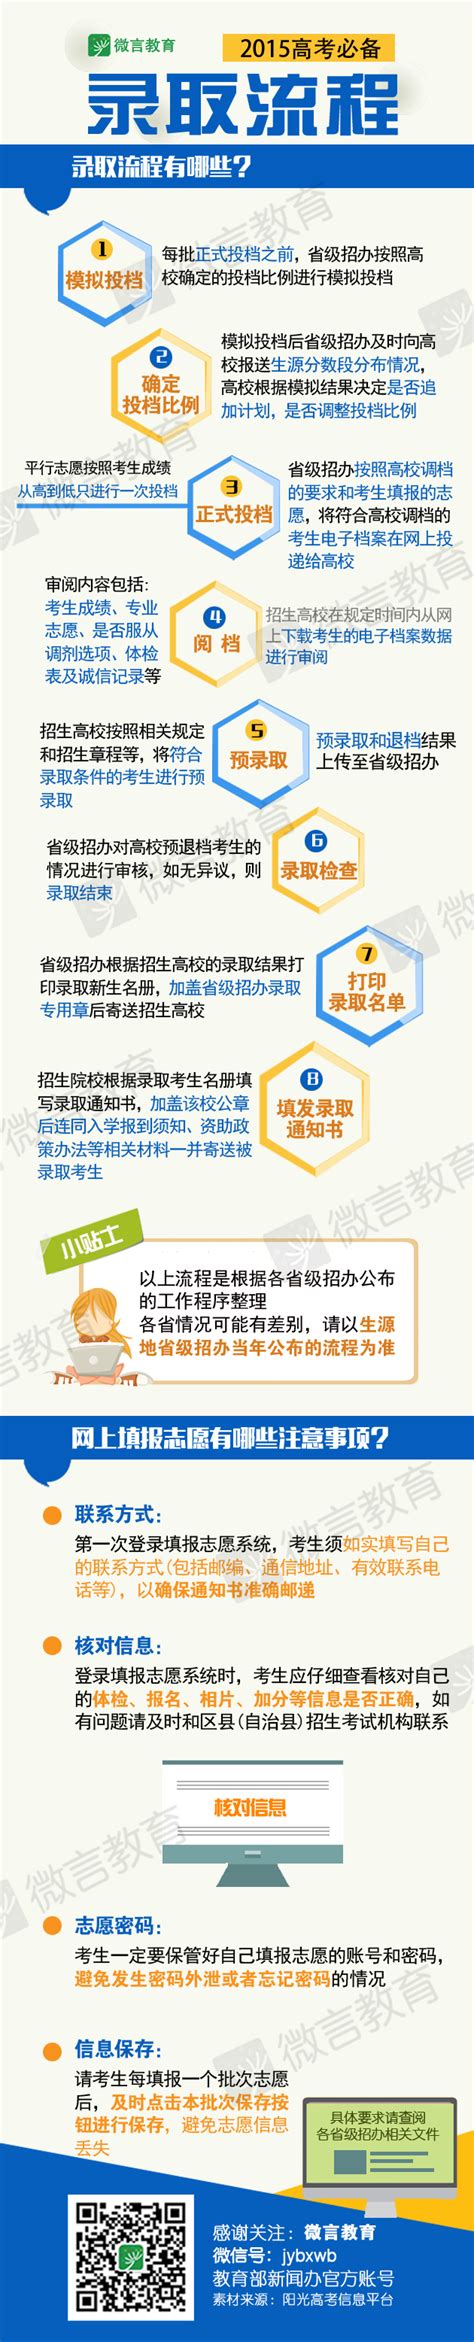 图解：2015高考录取流程 - 高考志愿填报 - 中文搜索引擎指南网